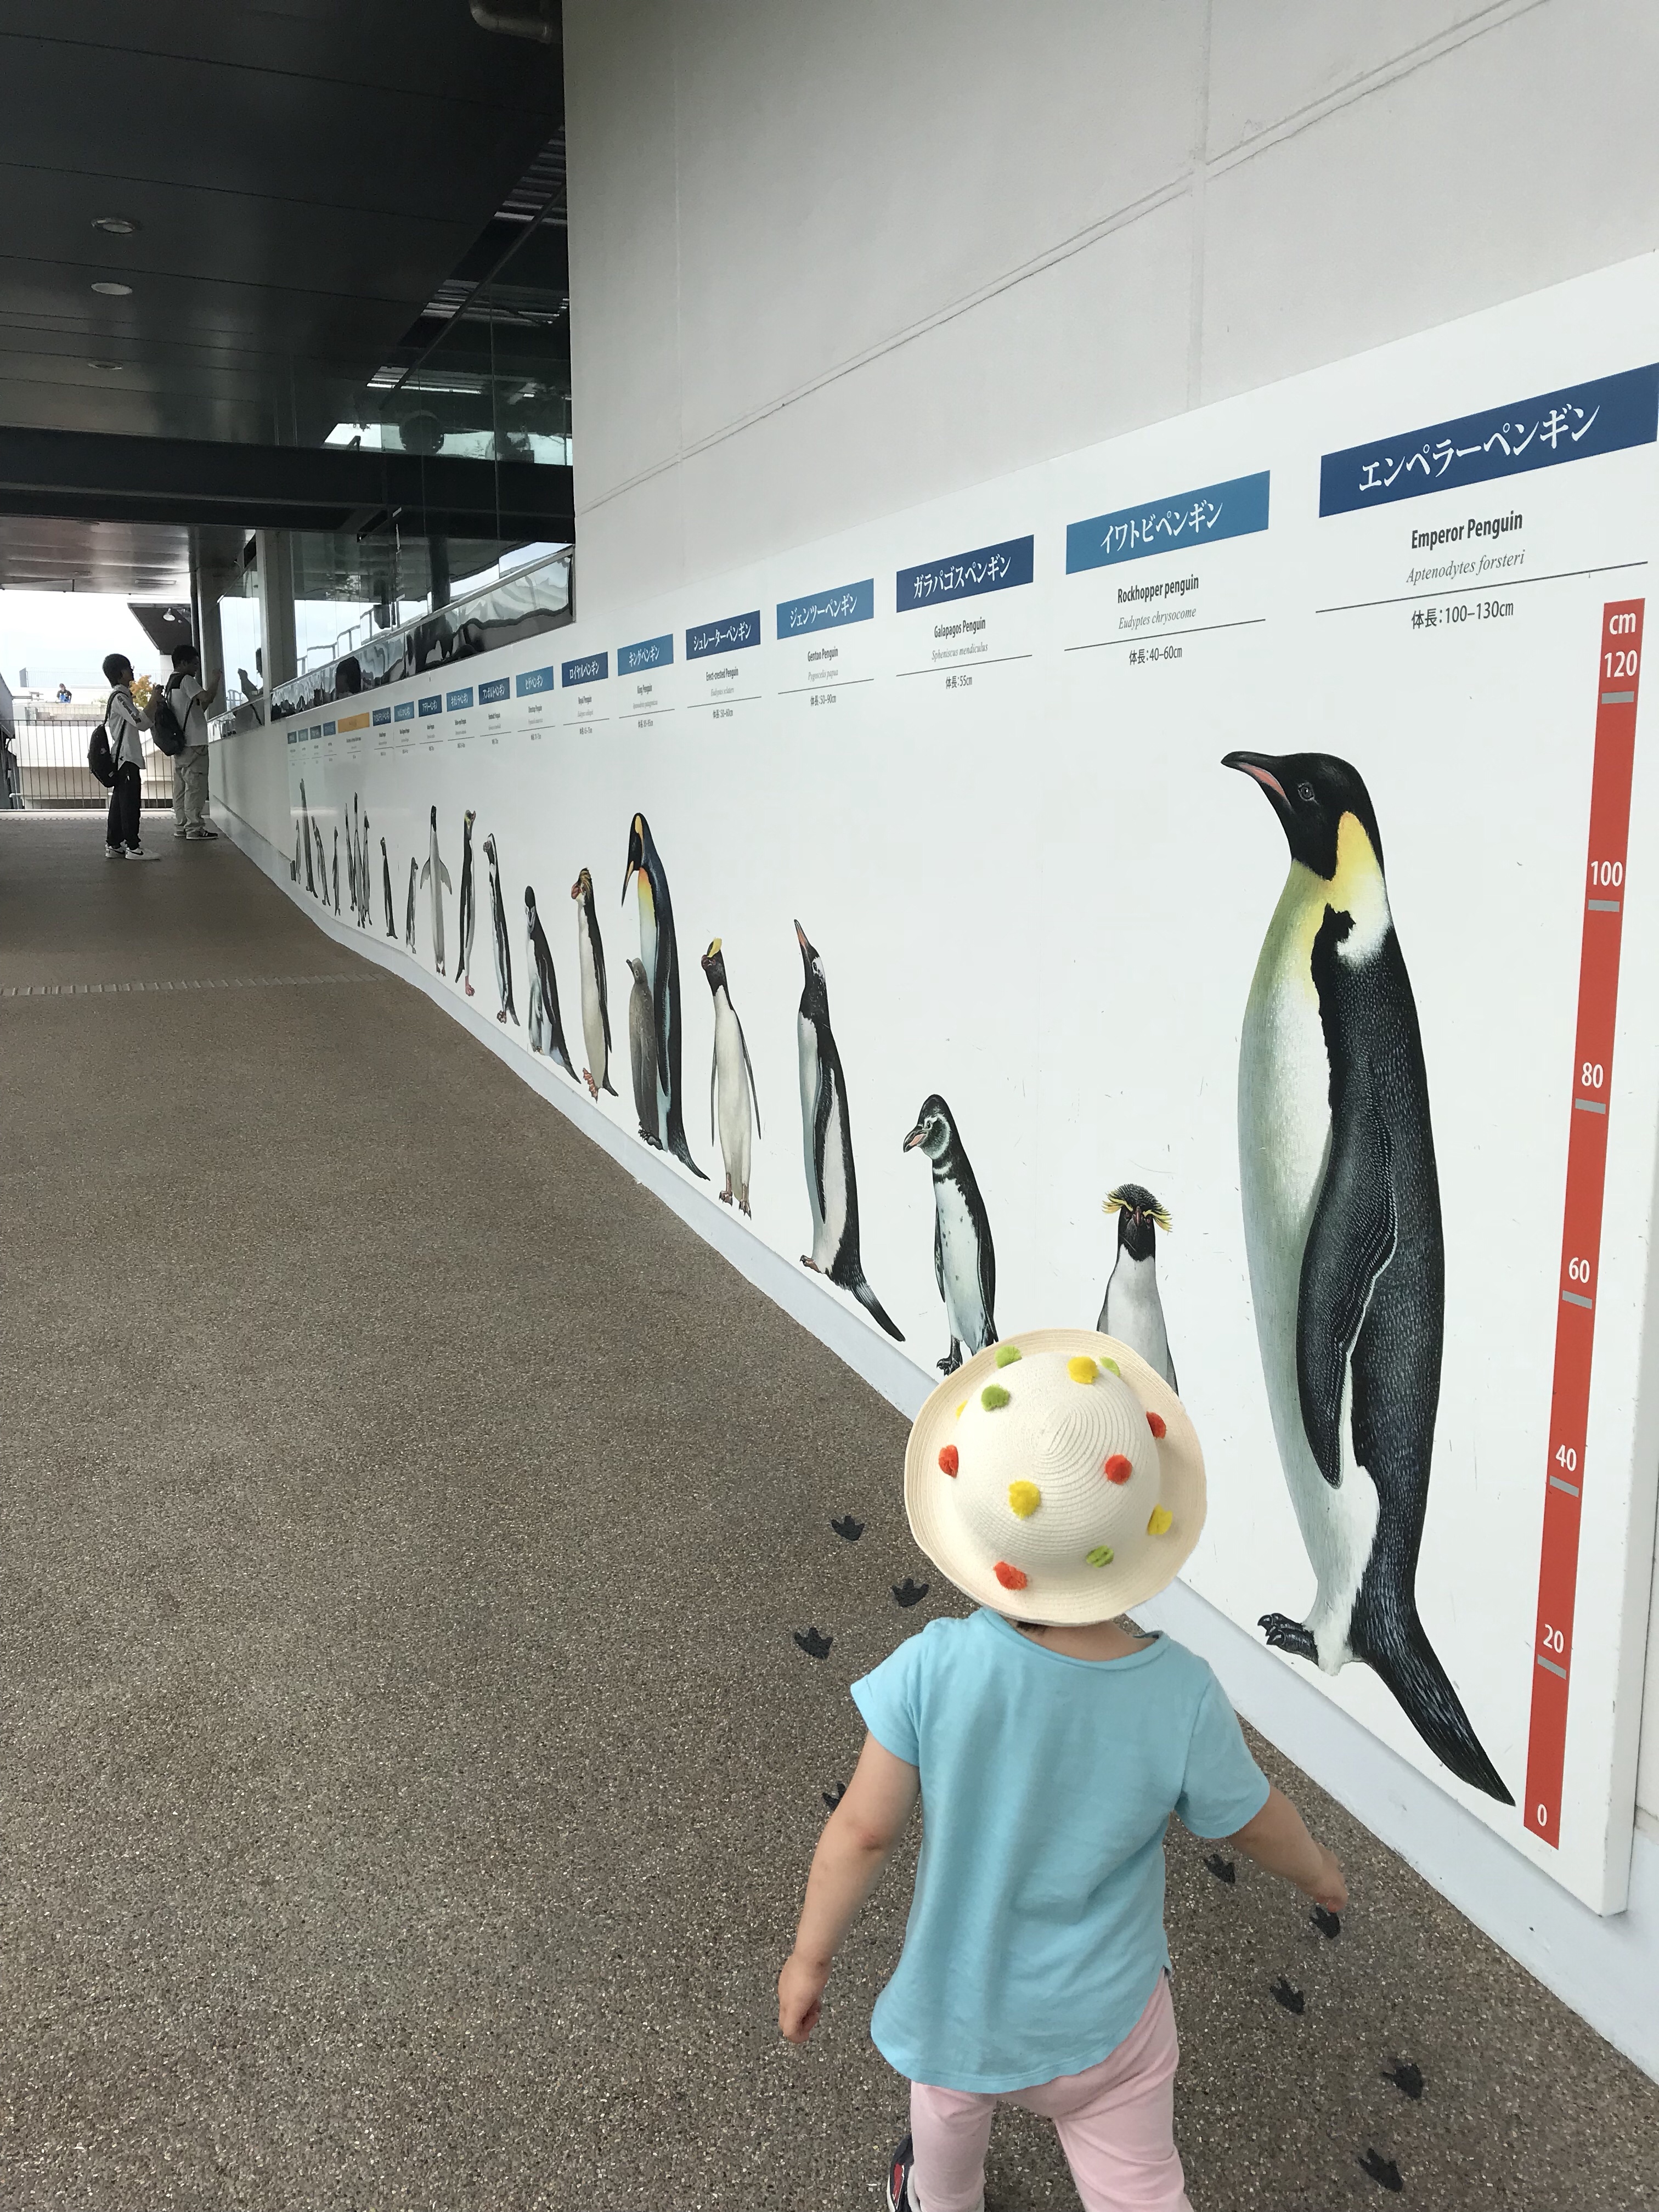 ペンギン飼育室に至る道にもこんな感じでサイズ感も分かりやすい壁画が